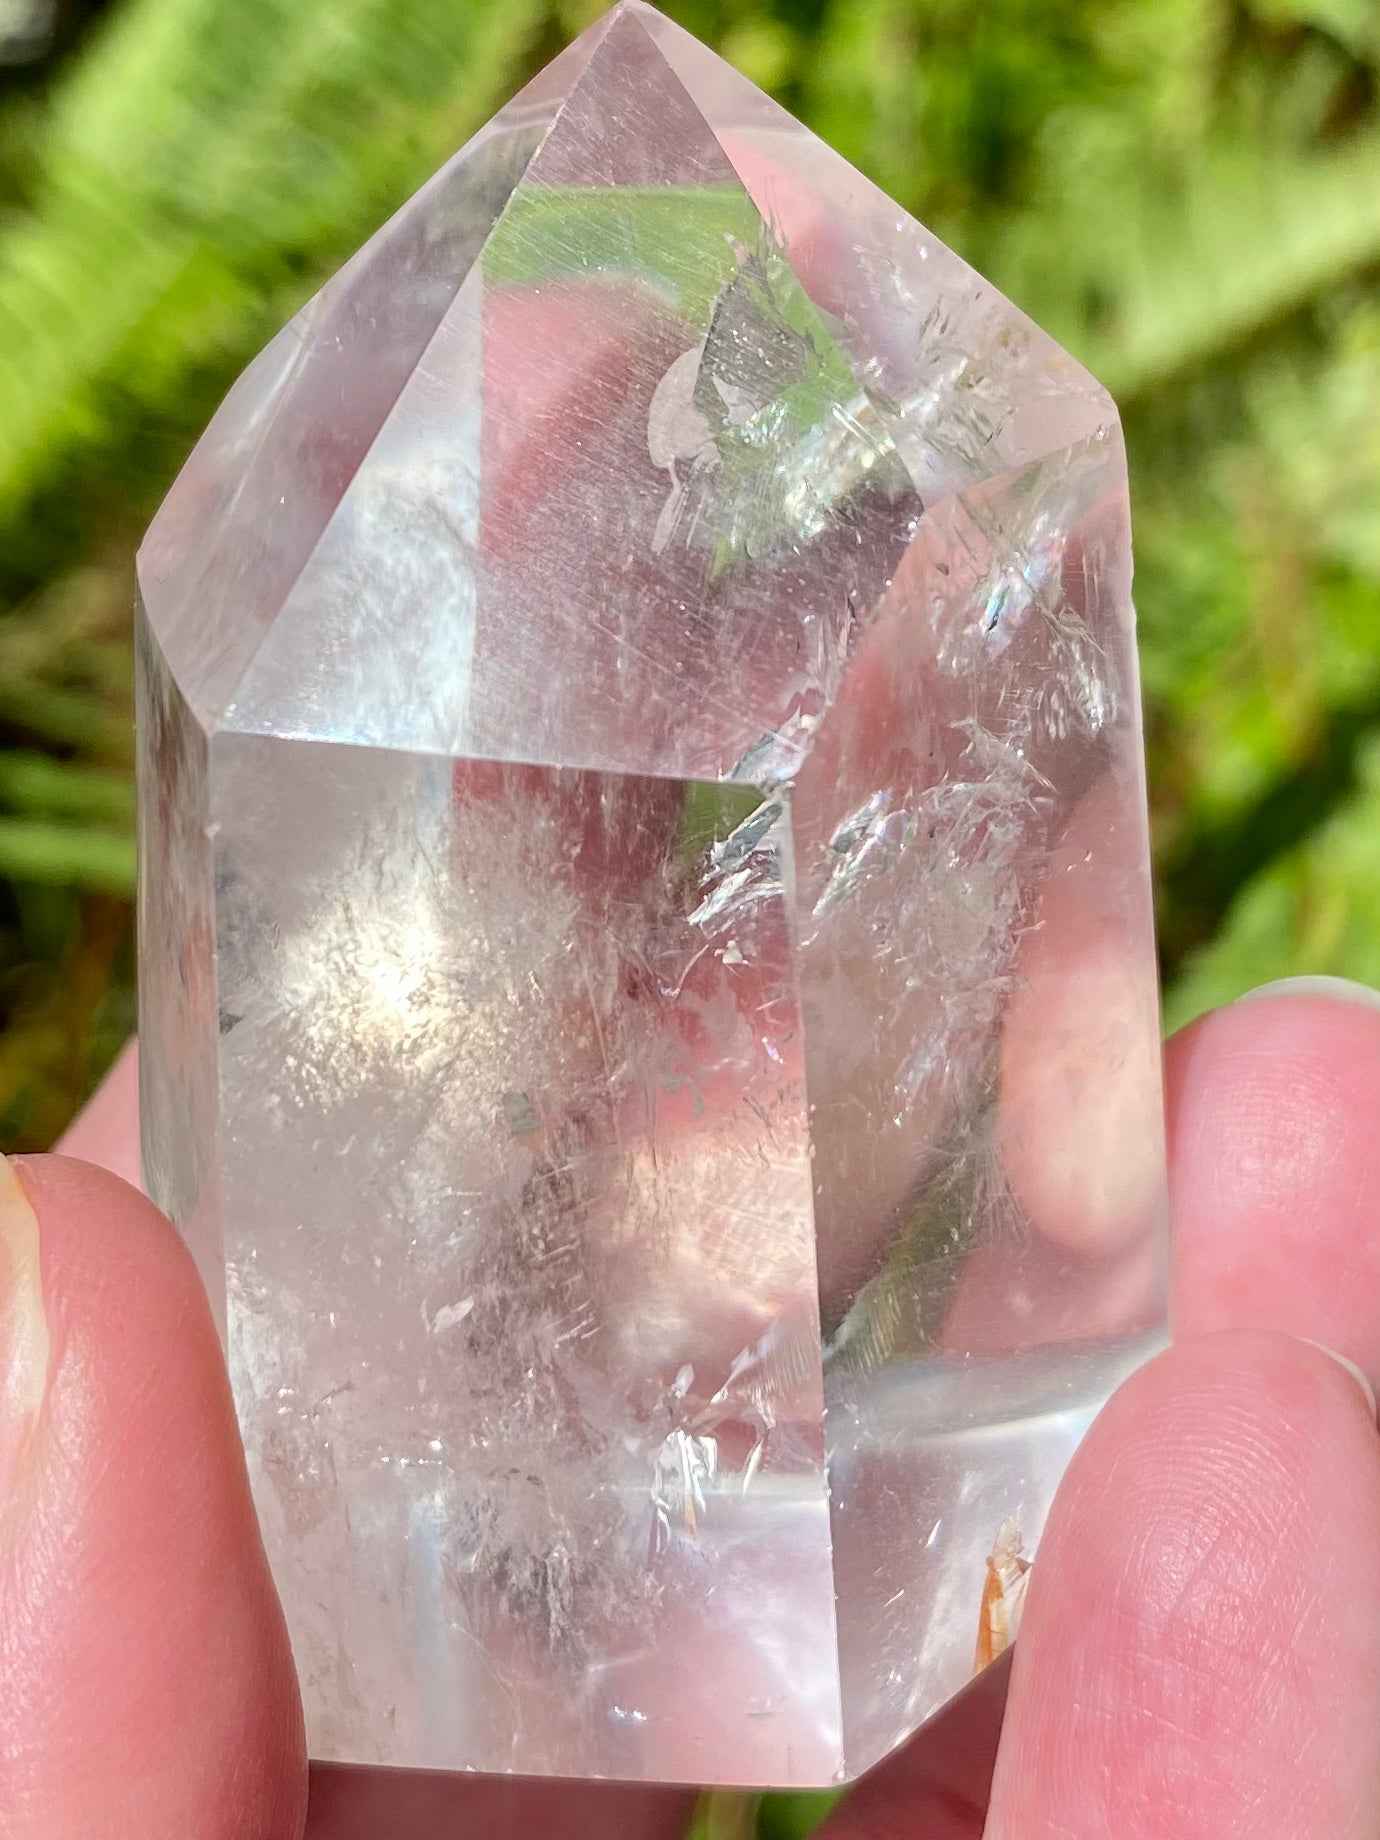 Clear Quartz Crystal Point with Rainbows - Morganna’s Treasures 